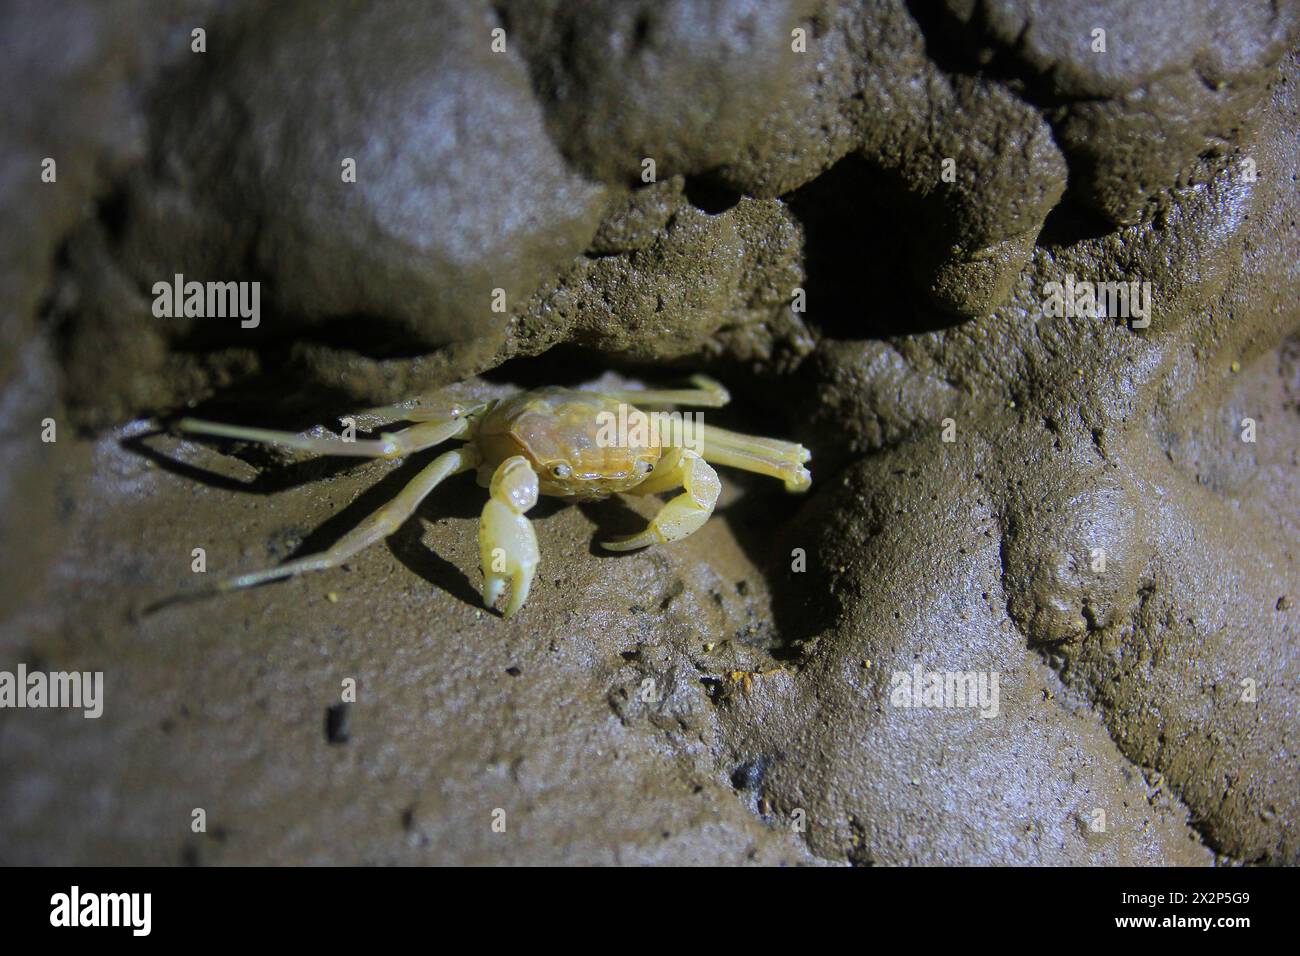 Sesamoides Jacobsoni, biote des grottes qui vit dans la région karstique de Gunung Sewu. Ce type de crabe a été découvert pour la première fois par Edward Jacobson en 1911. Banque D'Images